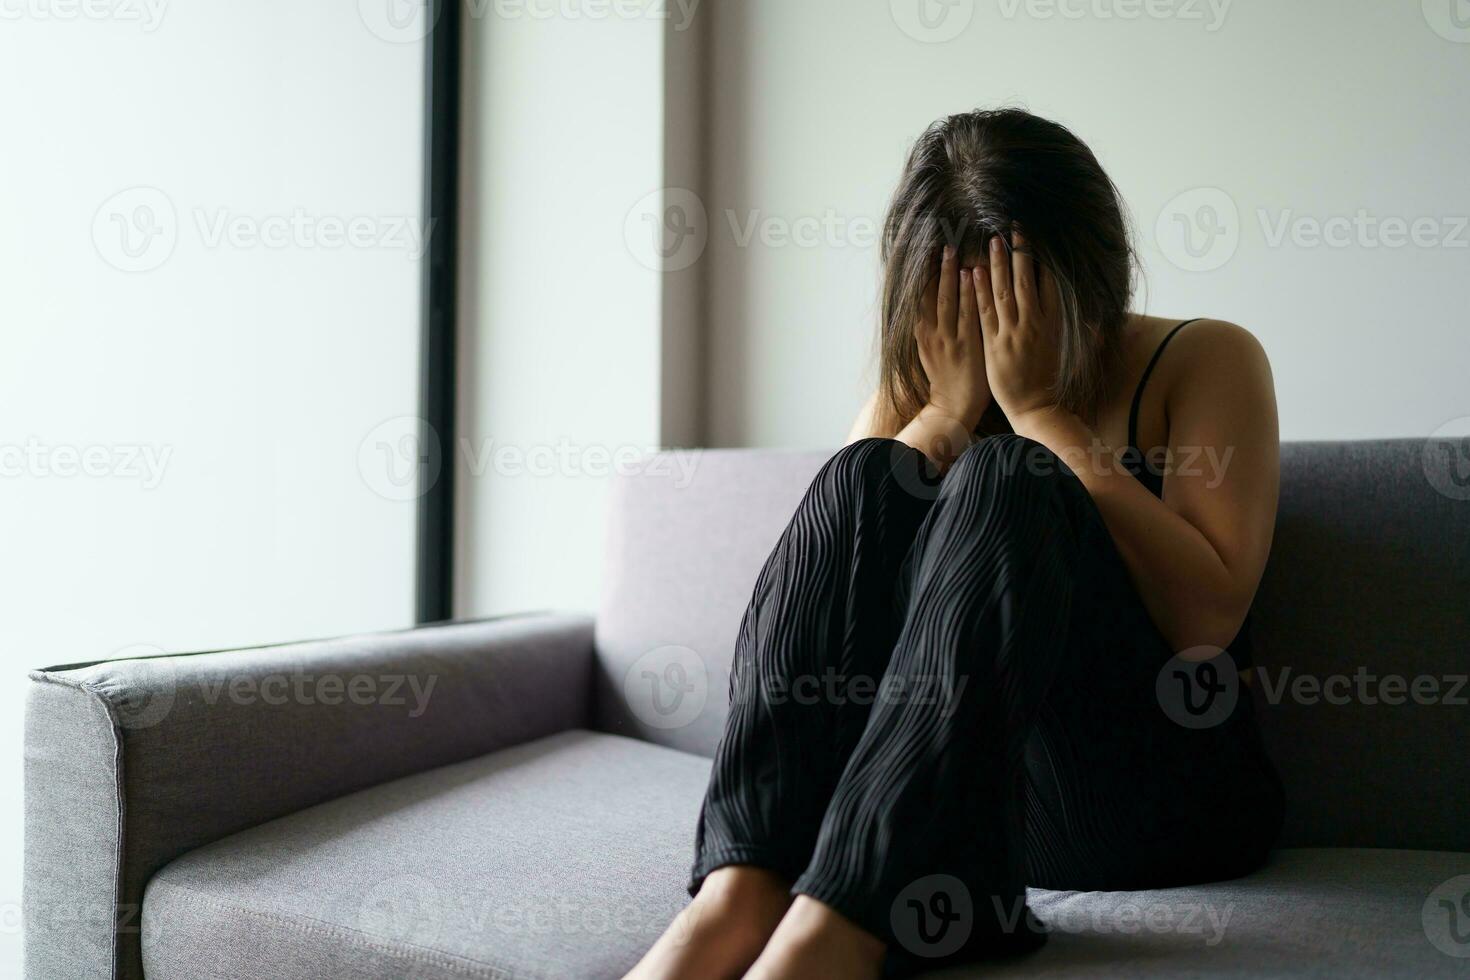 traurig Frau Denken Über Probleme Sitzung auf ein Sofa verärgert Mädchen Gefühl einsam und traurig von Schlecht Beziehung oder deprimiert Frau Störung mental Gesundheit. foto